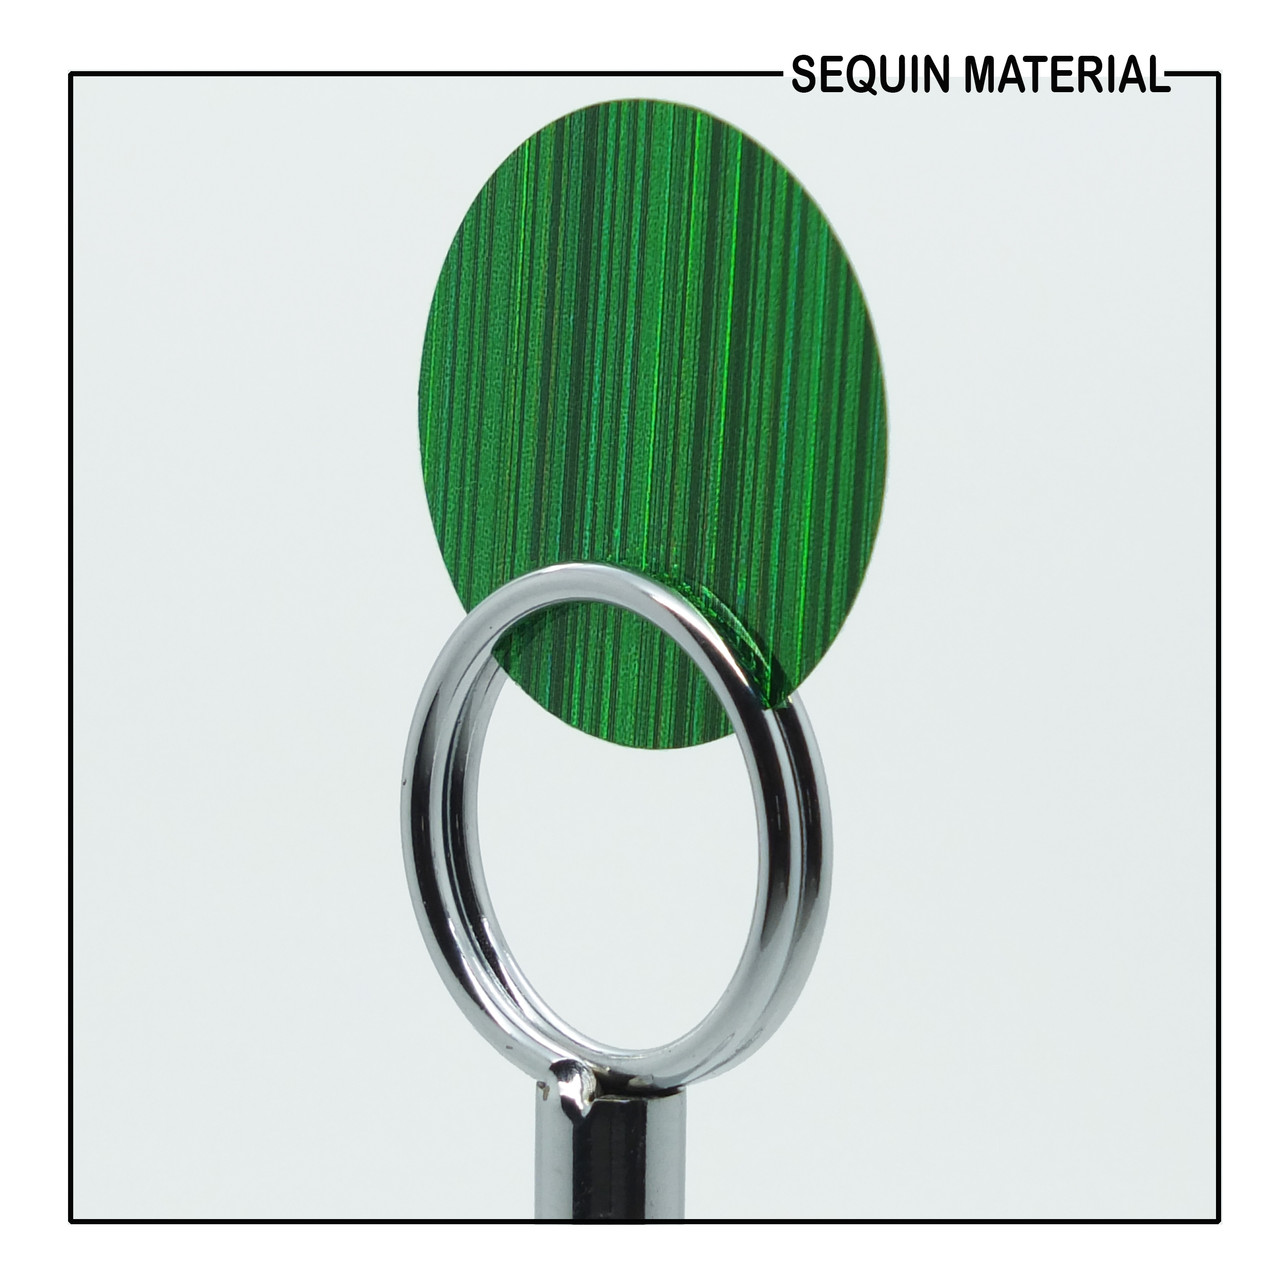 Green City Lights Refective Metallic Sequin Material